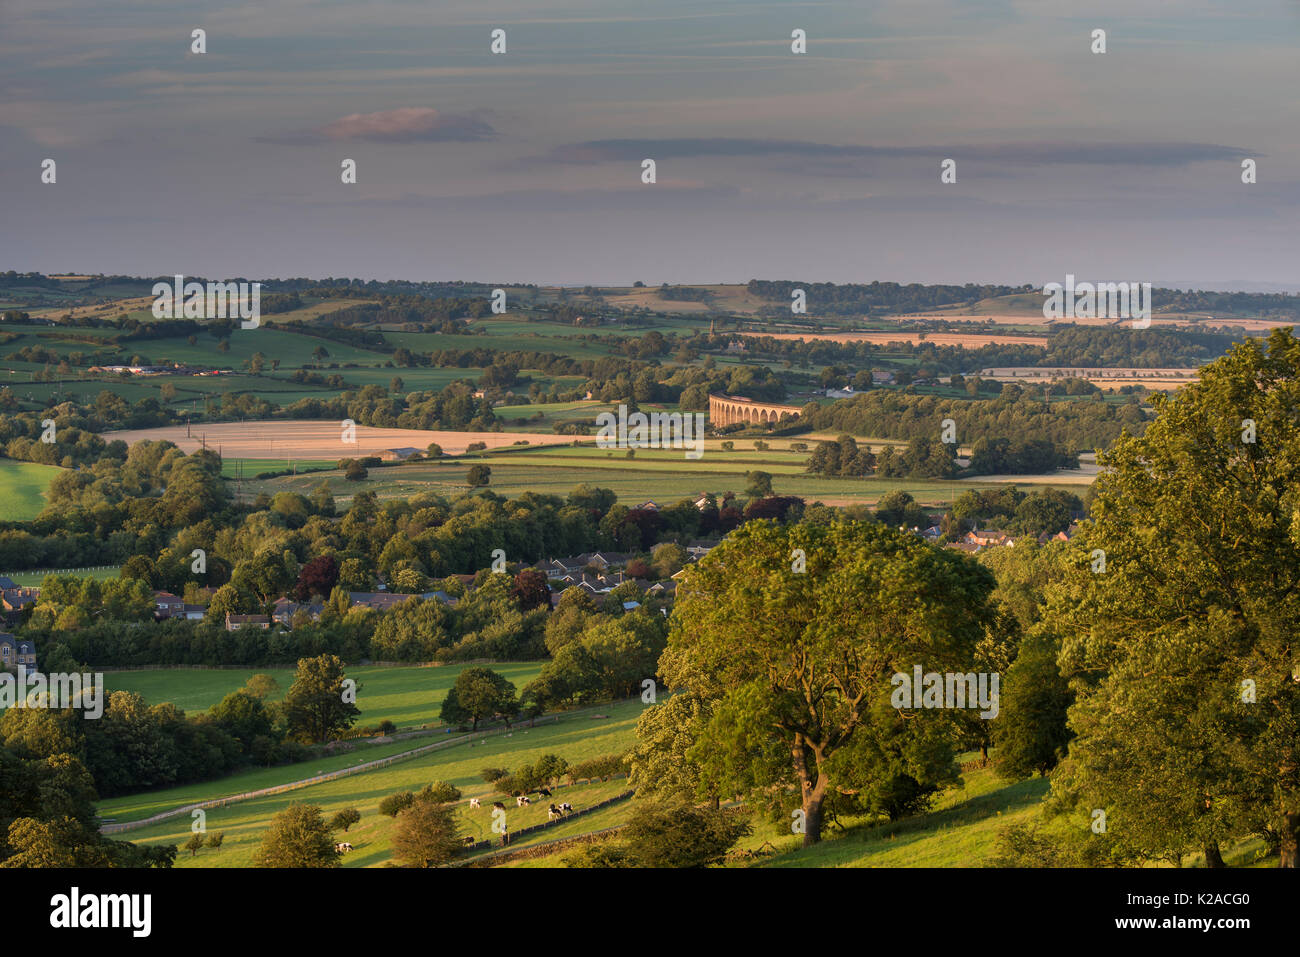 Hohe Blick über sonnenbeschienene Wharfe Tal, mit Pool in Bösingen Dorf- & Arthington Viadukt in einer malerischen Landschaft - Yorkshire, England, UK. Stockfoto